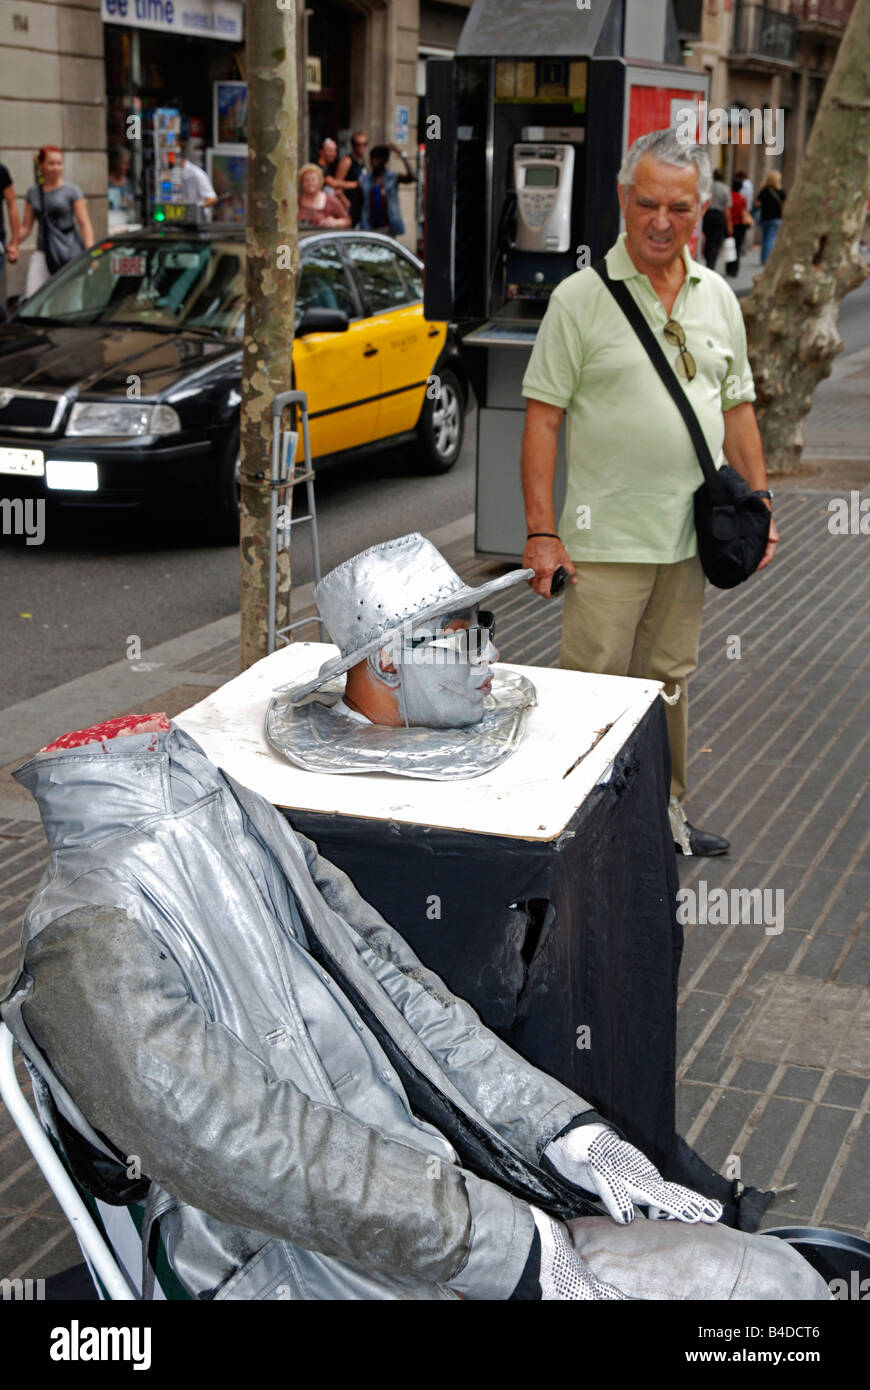 Les droits de l'homme qui regarde un artiste de rue statue sur la Rambla à Barcelone, Espagne Banque D'Images